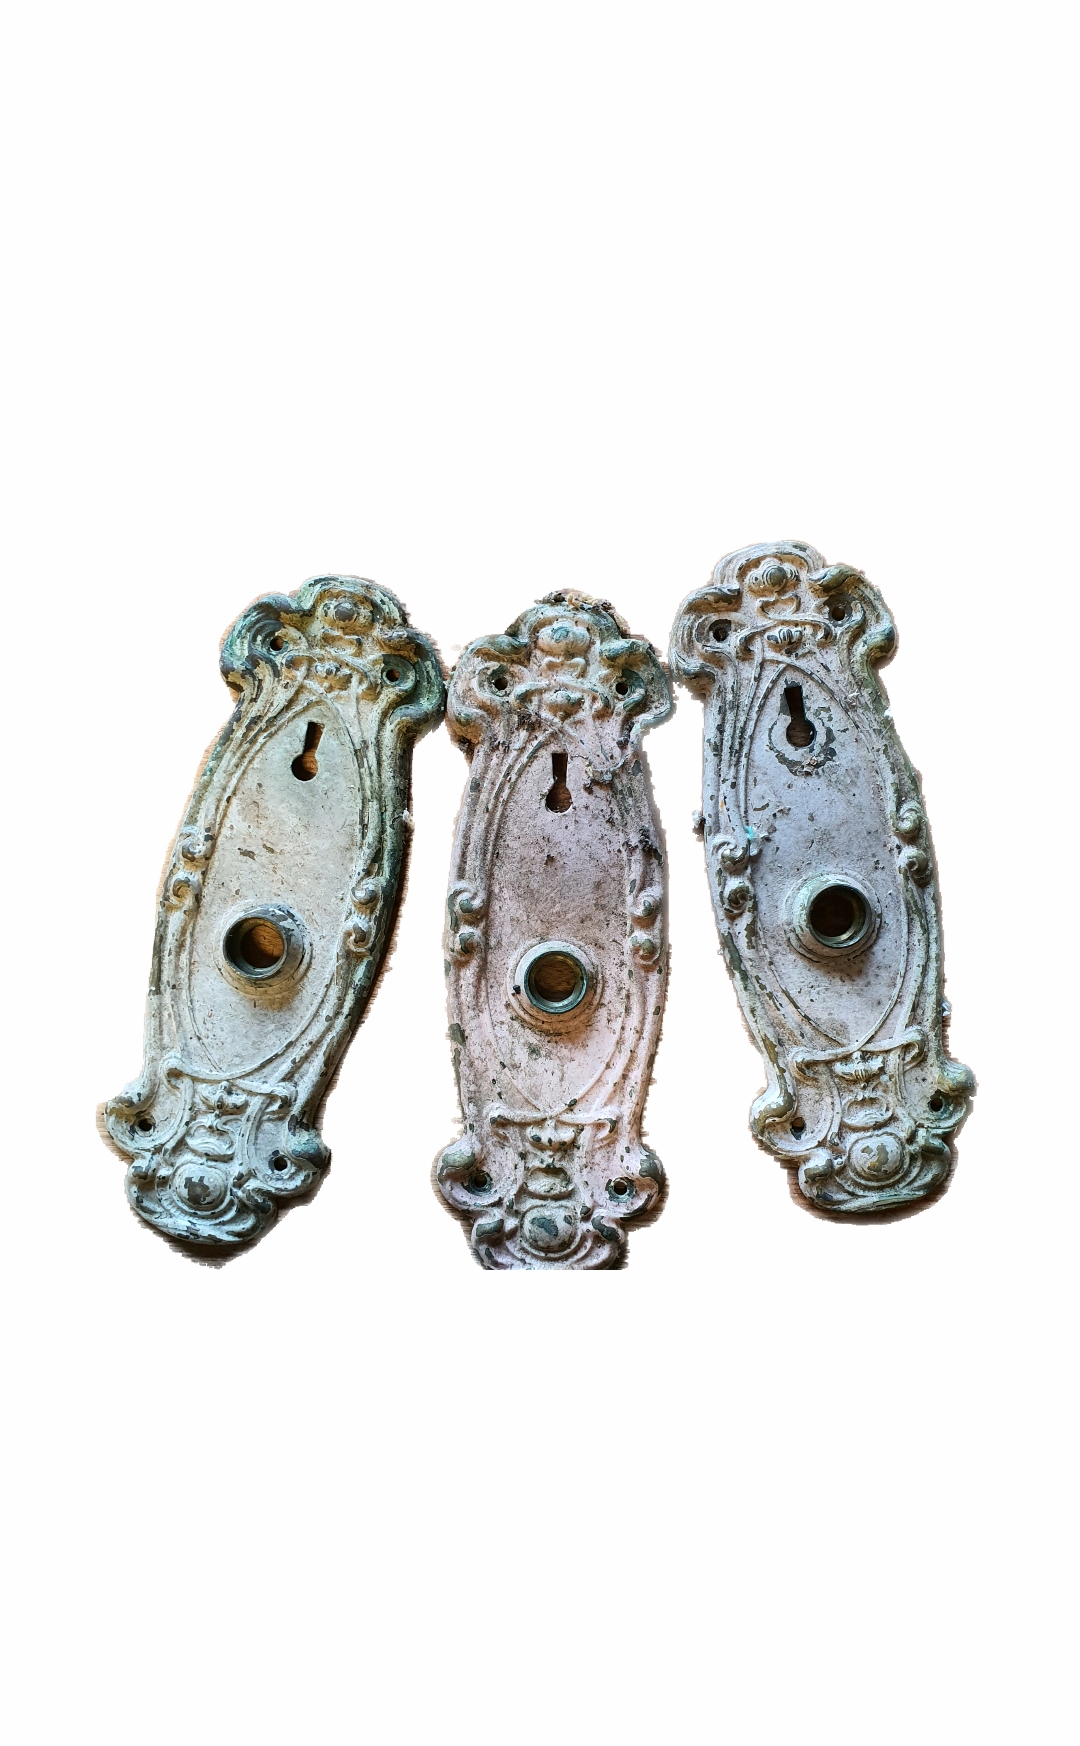 3 Antique Doorknob Faceplates